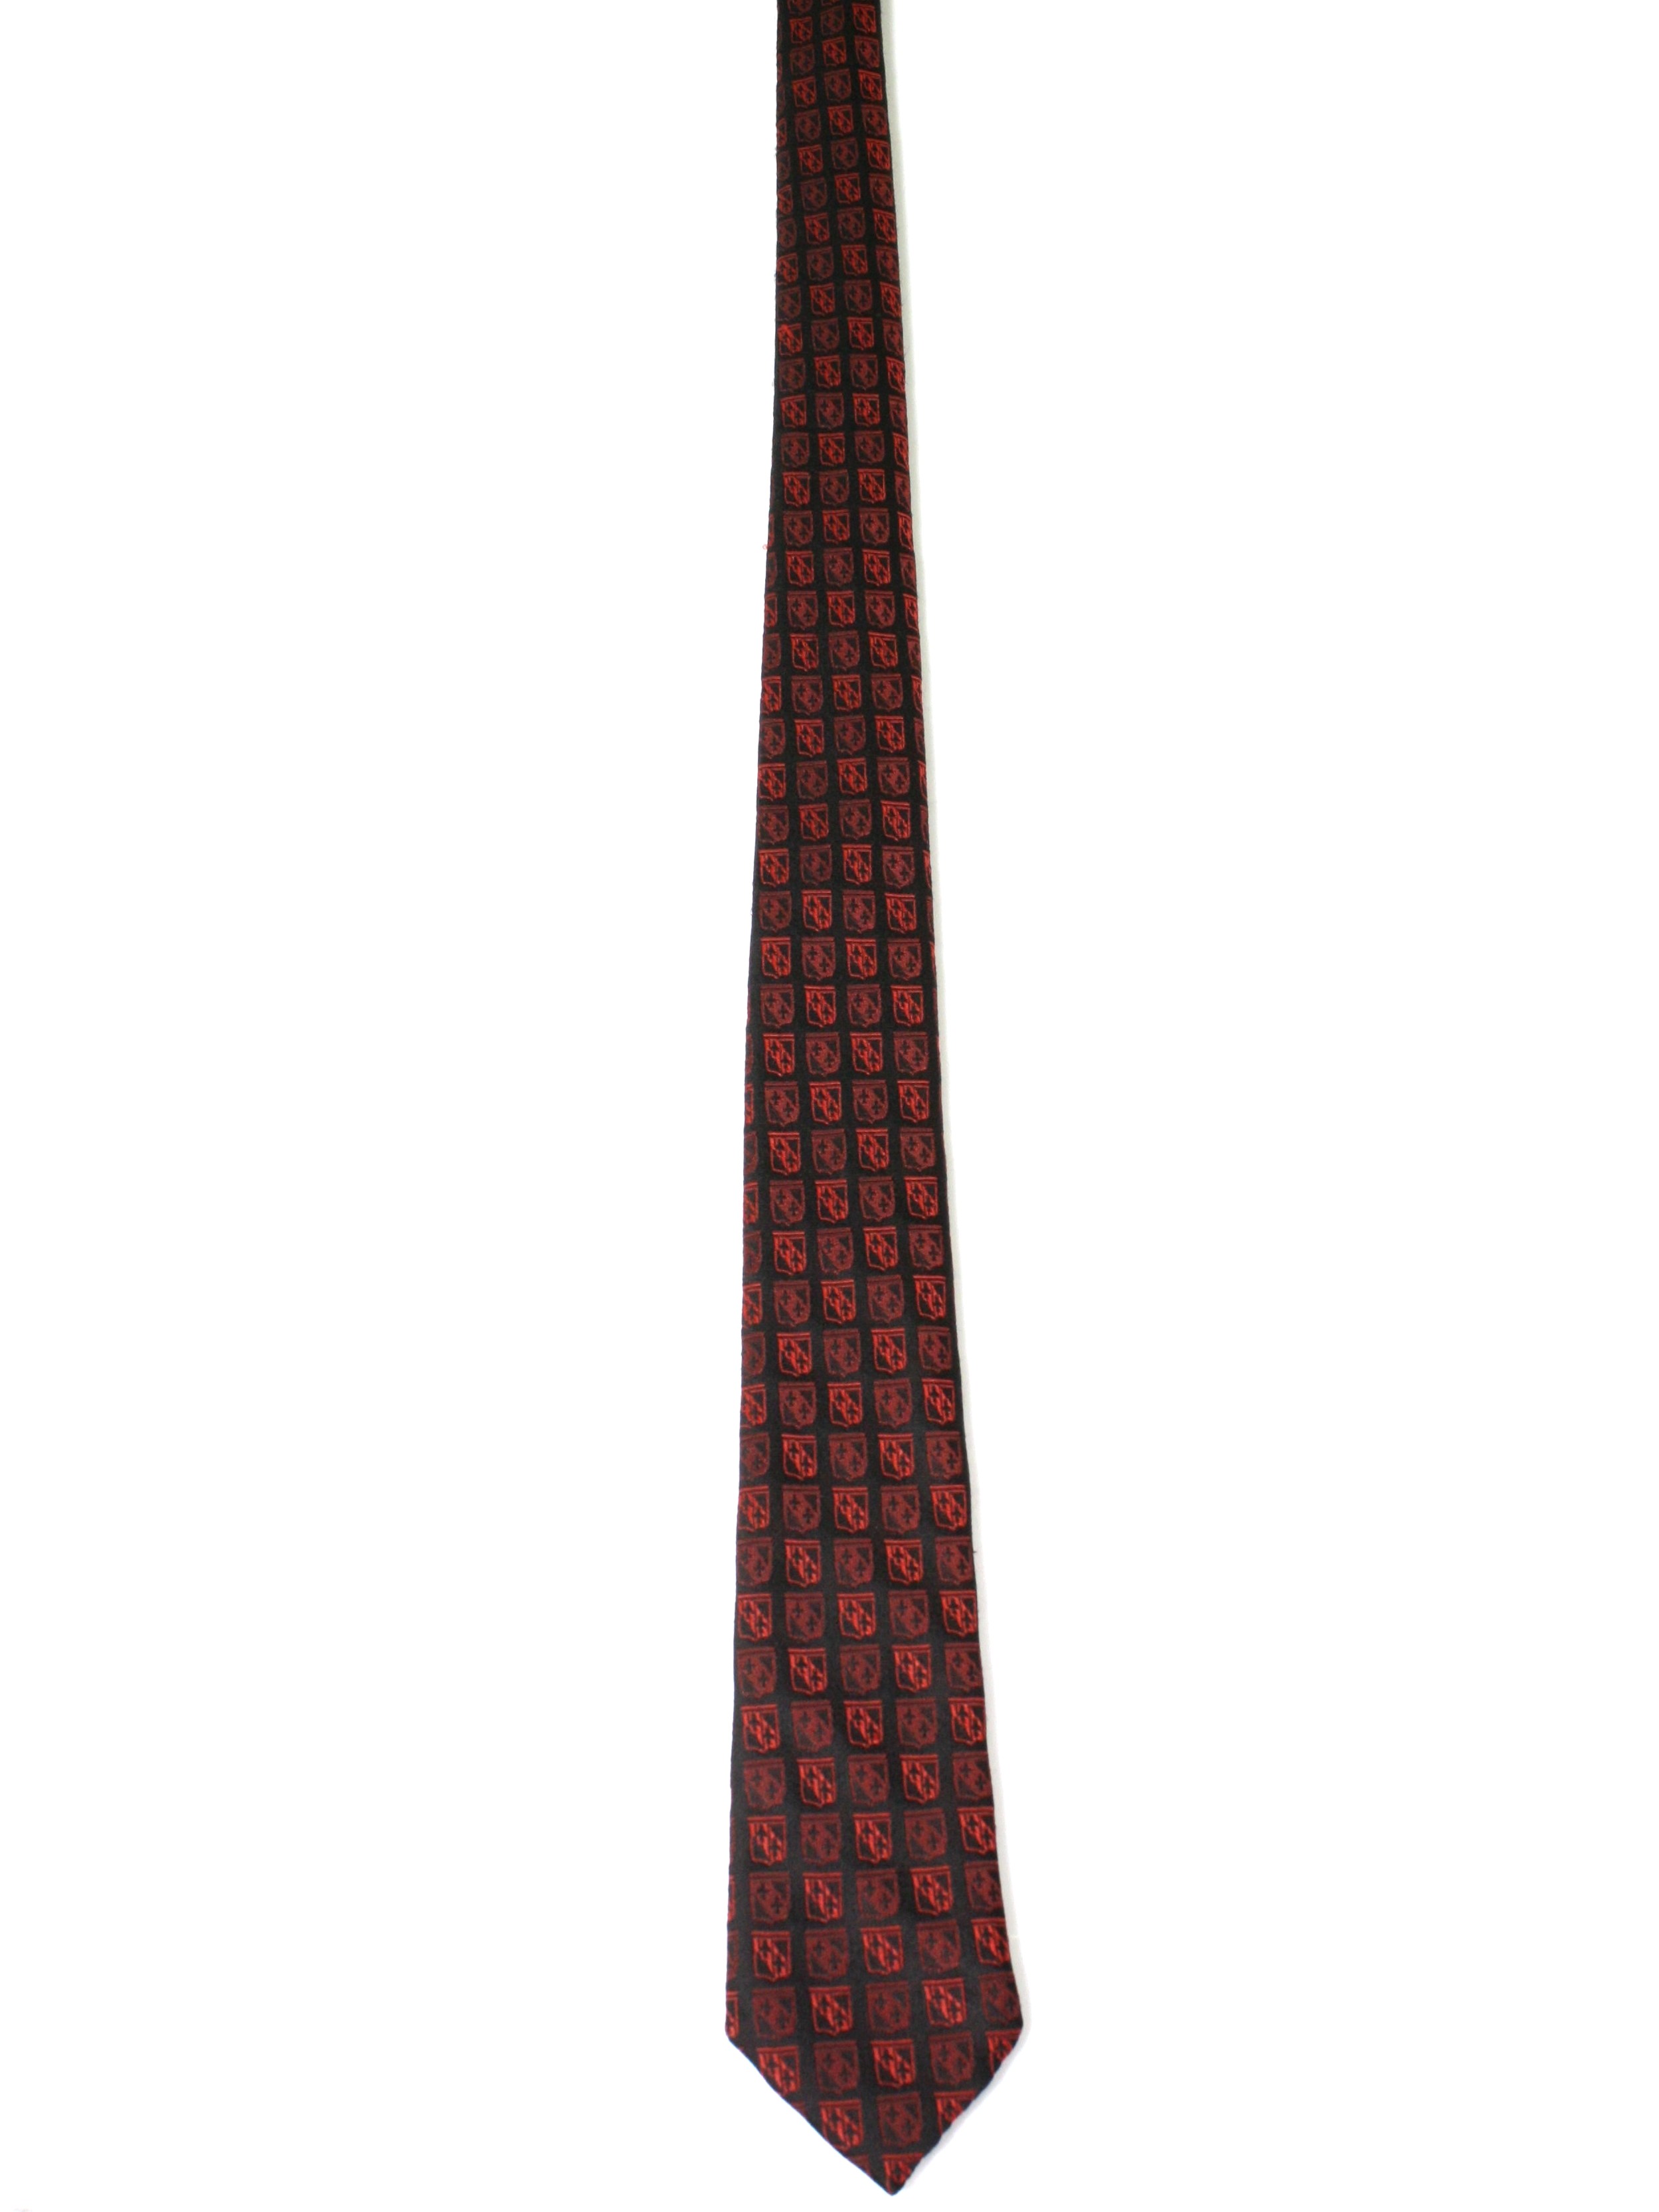 Regal 1960s Vintage Skinny Tie